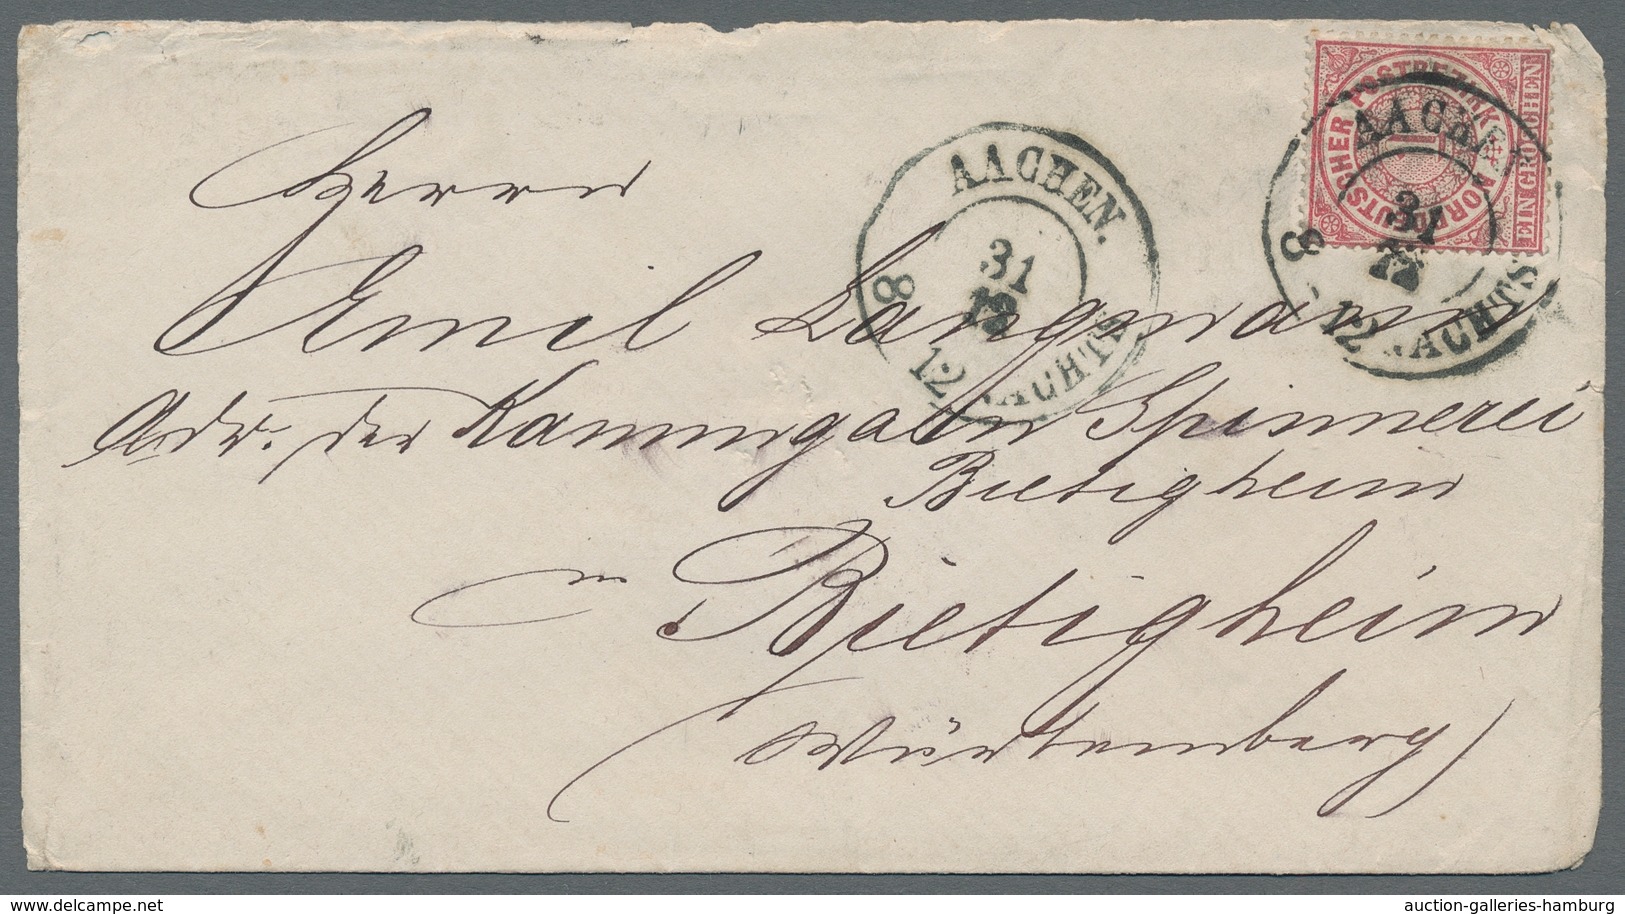 Norddeutscher Bund - Marken und Briefe: 1868, 18 Briefe mit besseren Stempeln wie NORDERNEY, Hufeise